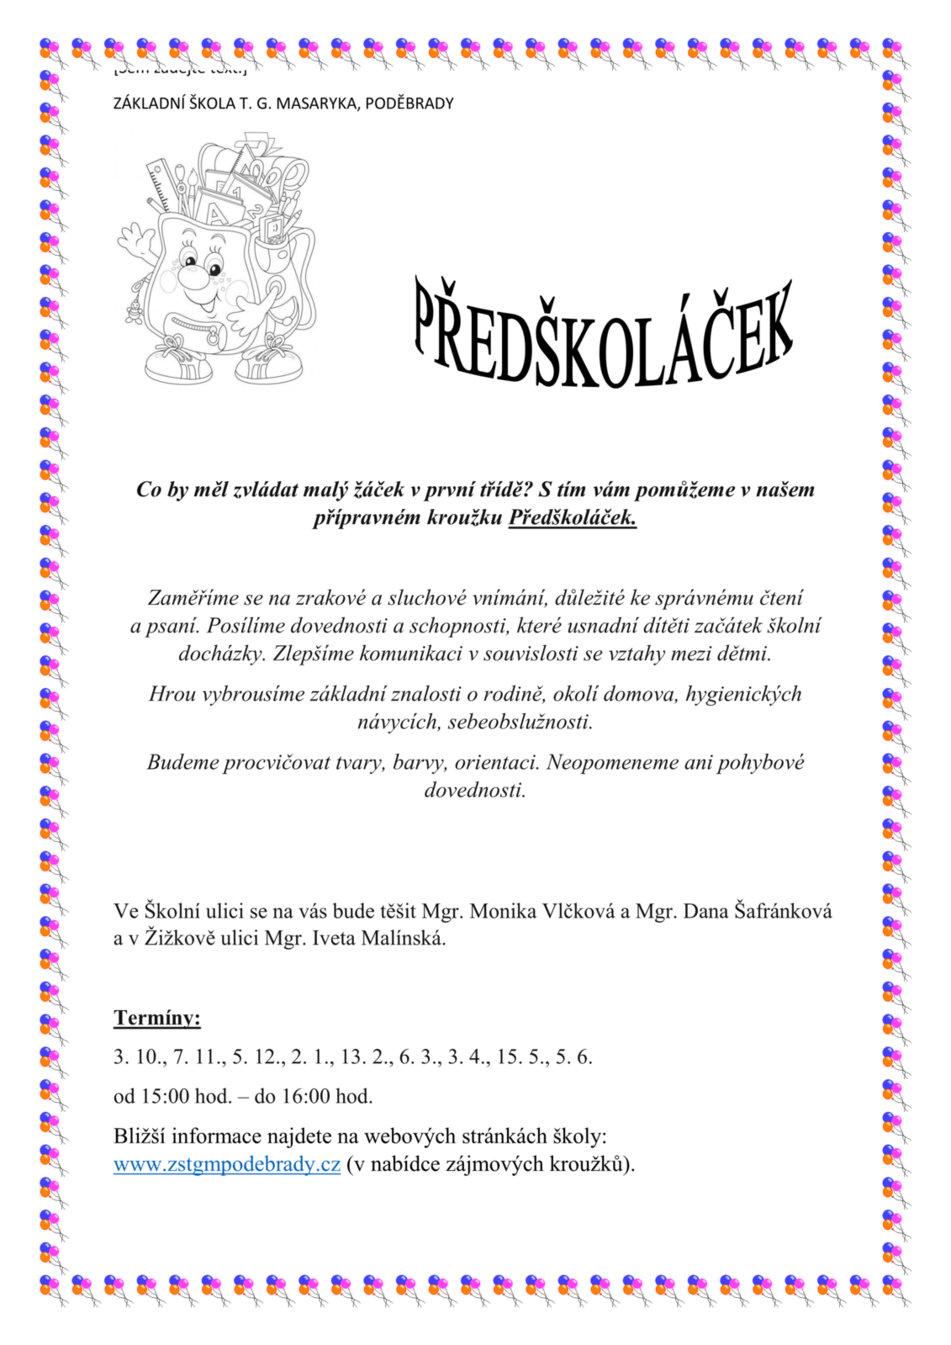 Plakát Předškoláček (1).png